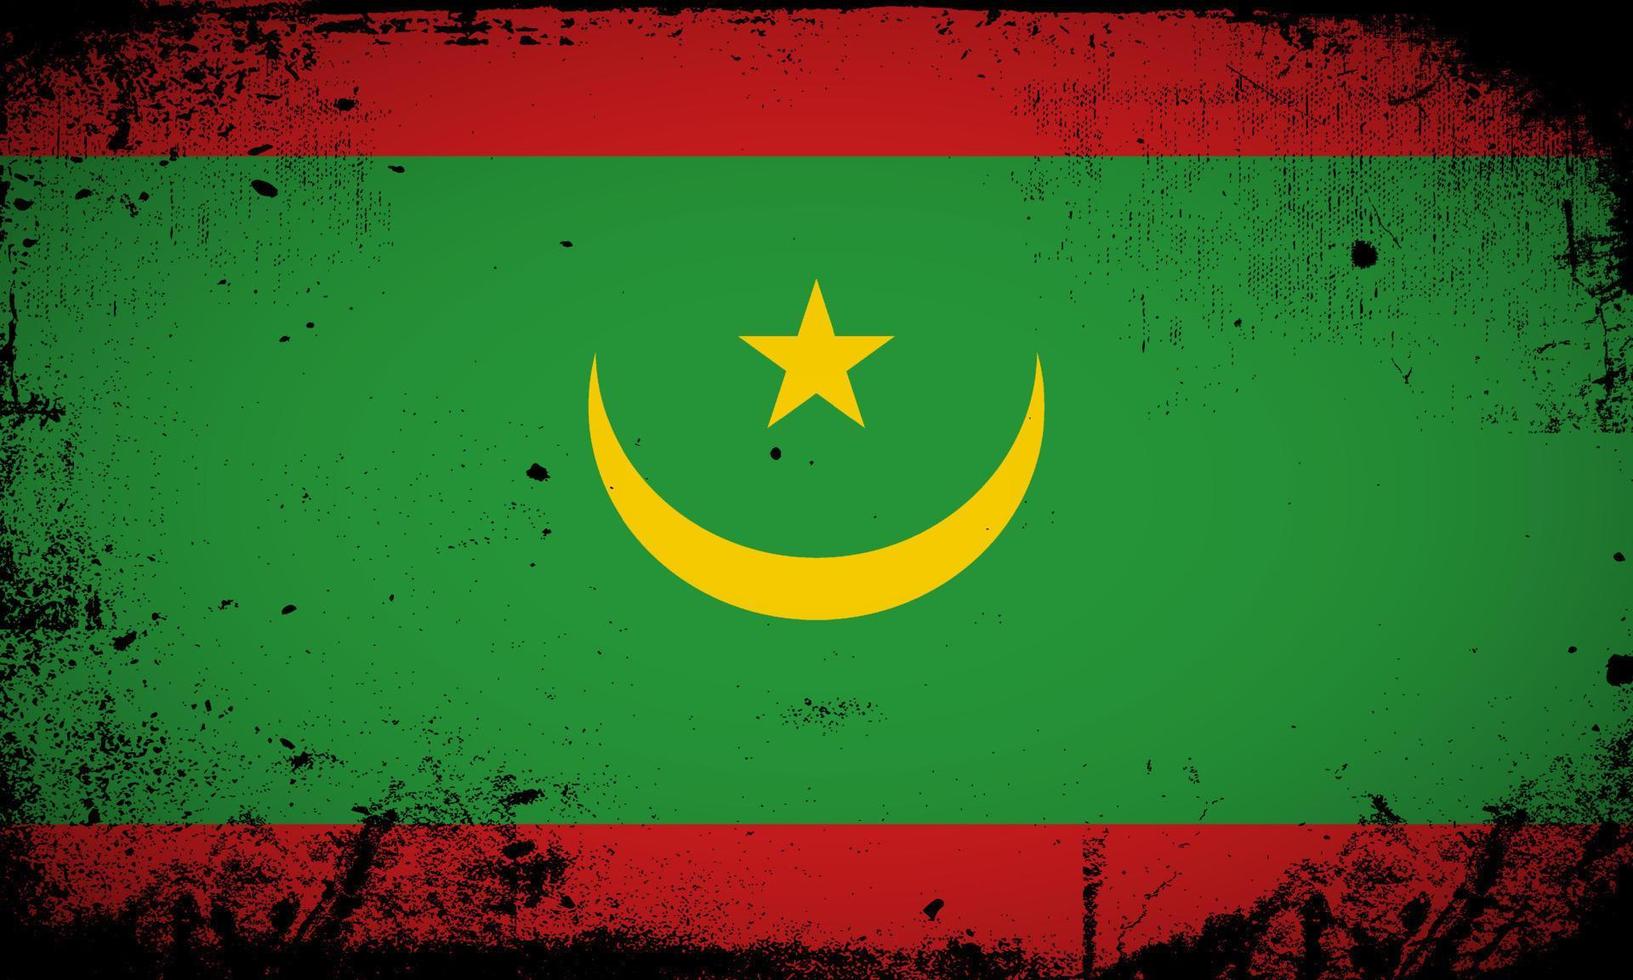 nouveau vecteur abstrait de fond de drapeau mauritanie avec style de trait grunge. illustration vectorielle du jour de l'indépendance de la mauritanie.